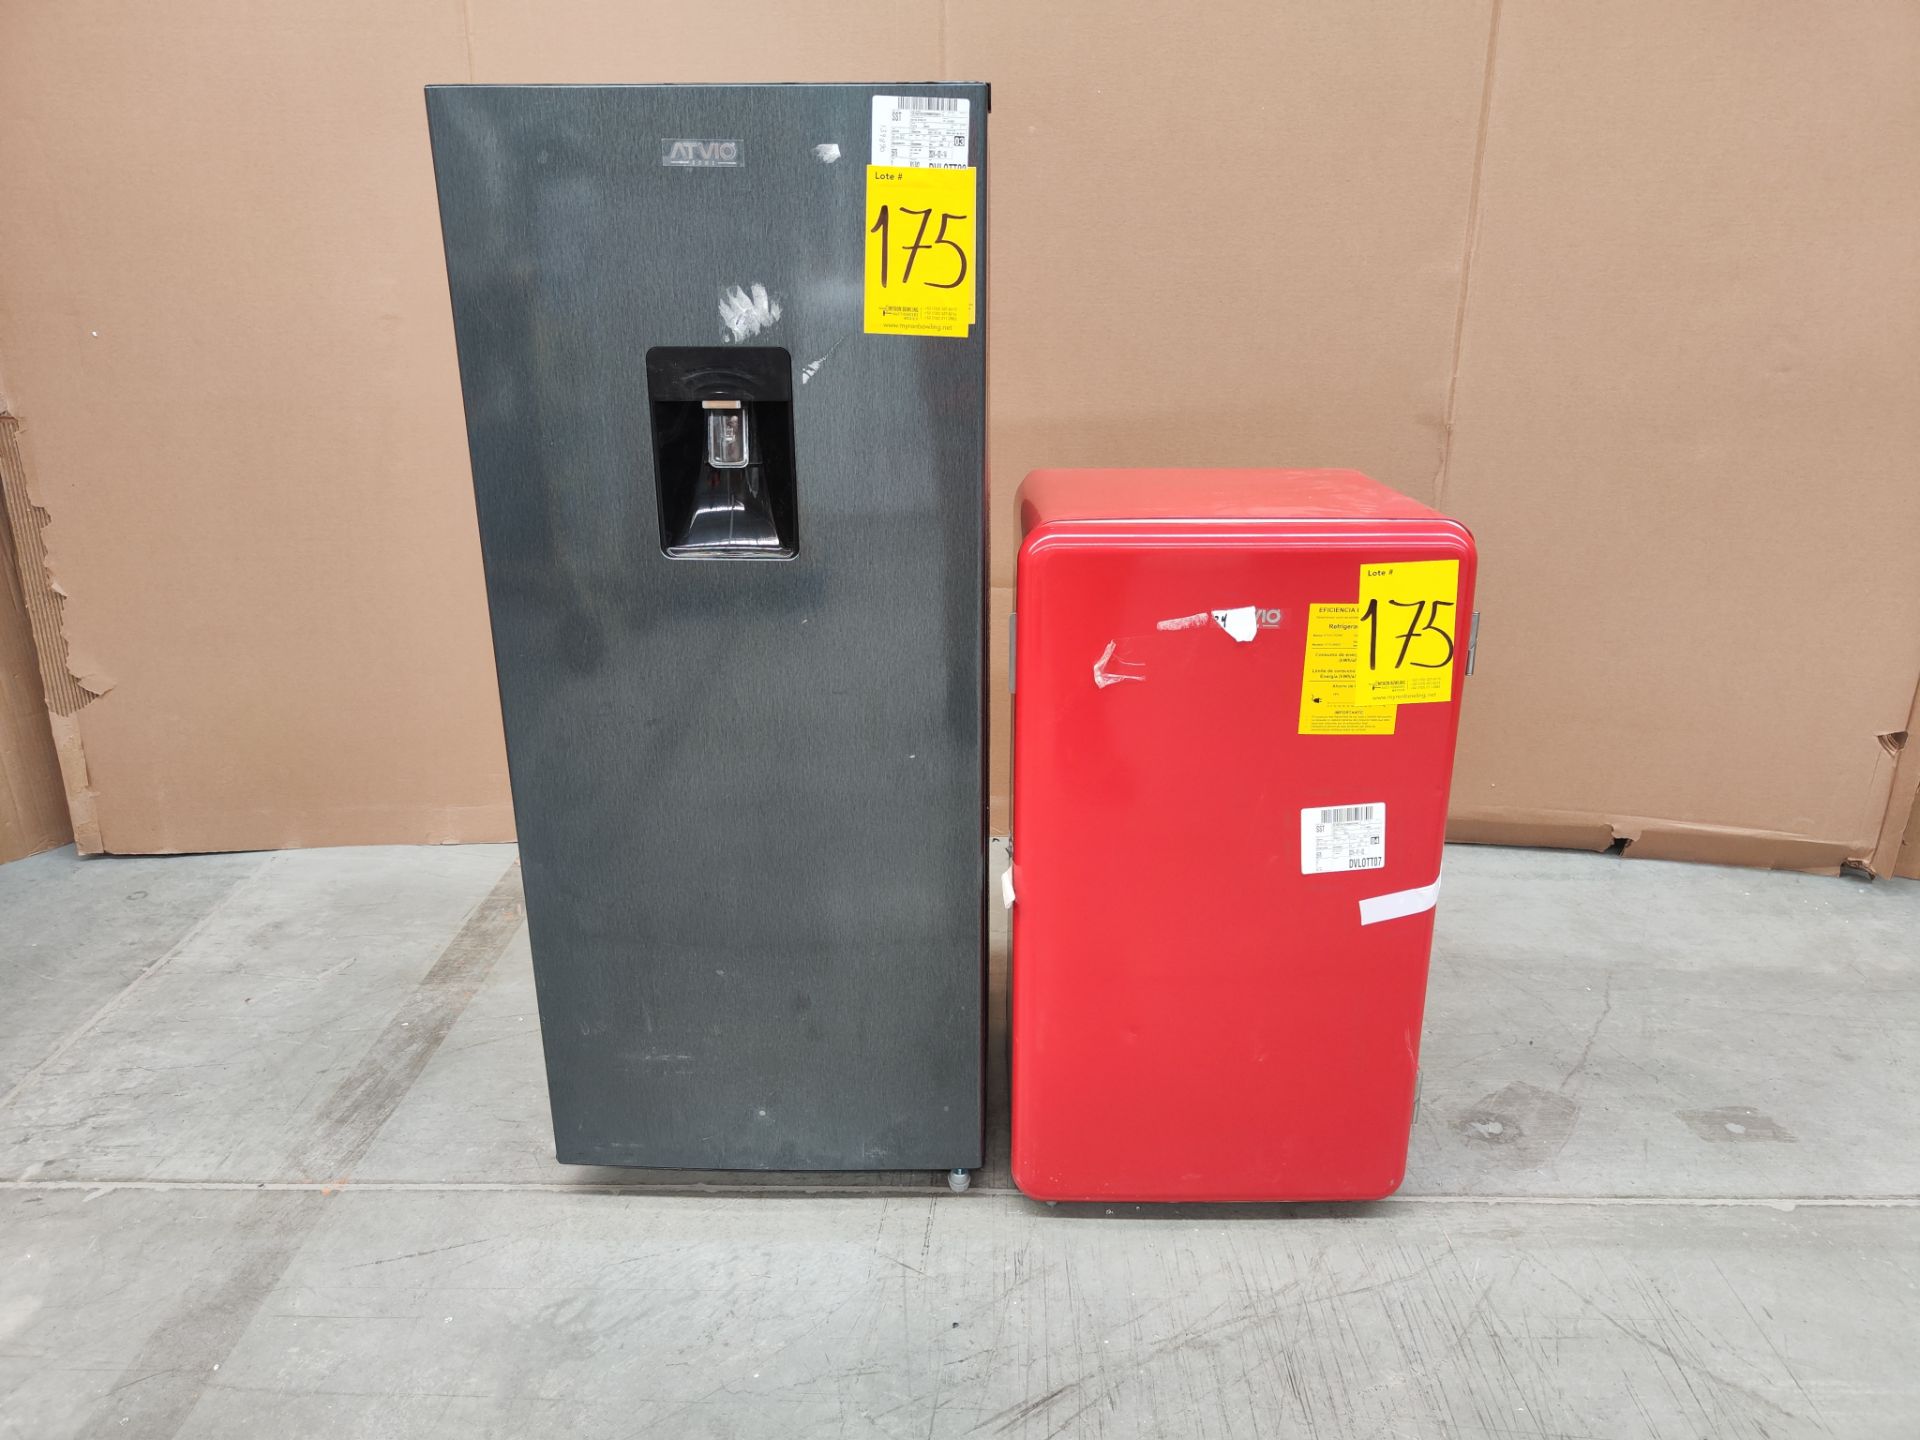 Lote de refrigerador y minibar contiene: 1 Refrigerador Marca ATVIO, Modelo AT-6.6URS, Serie 1310040